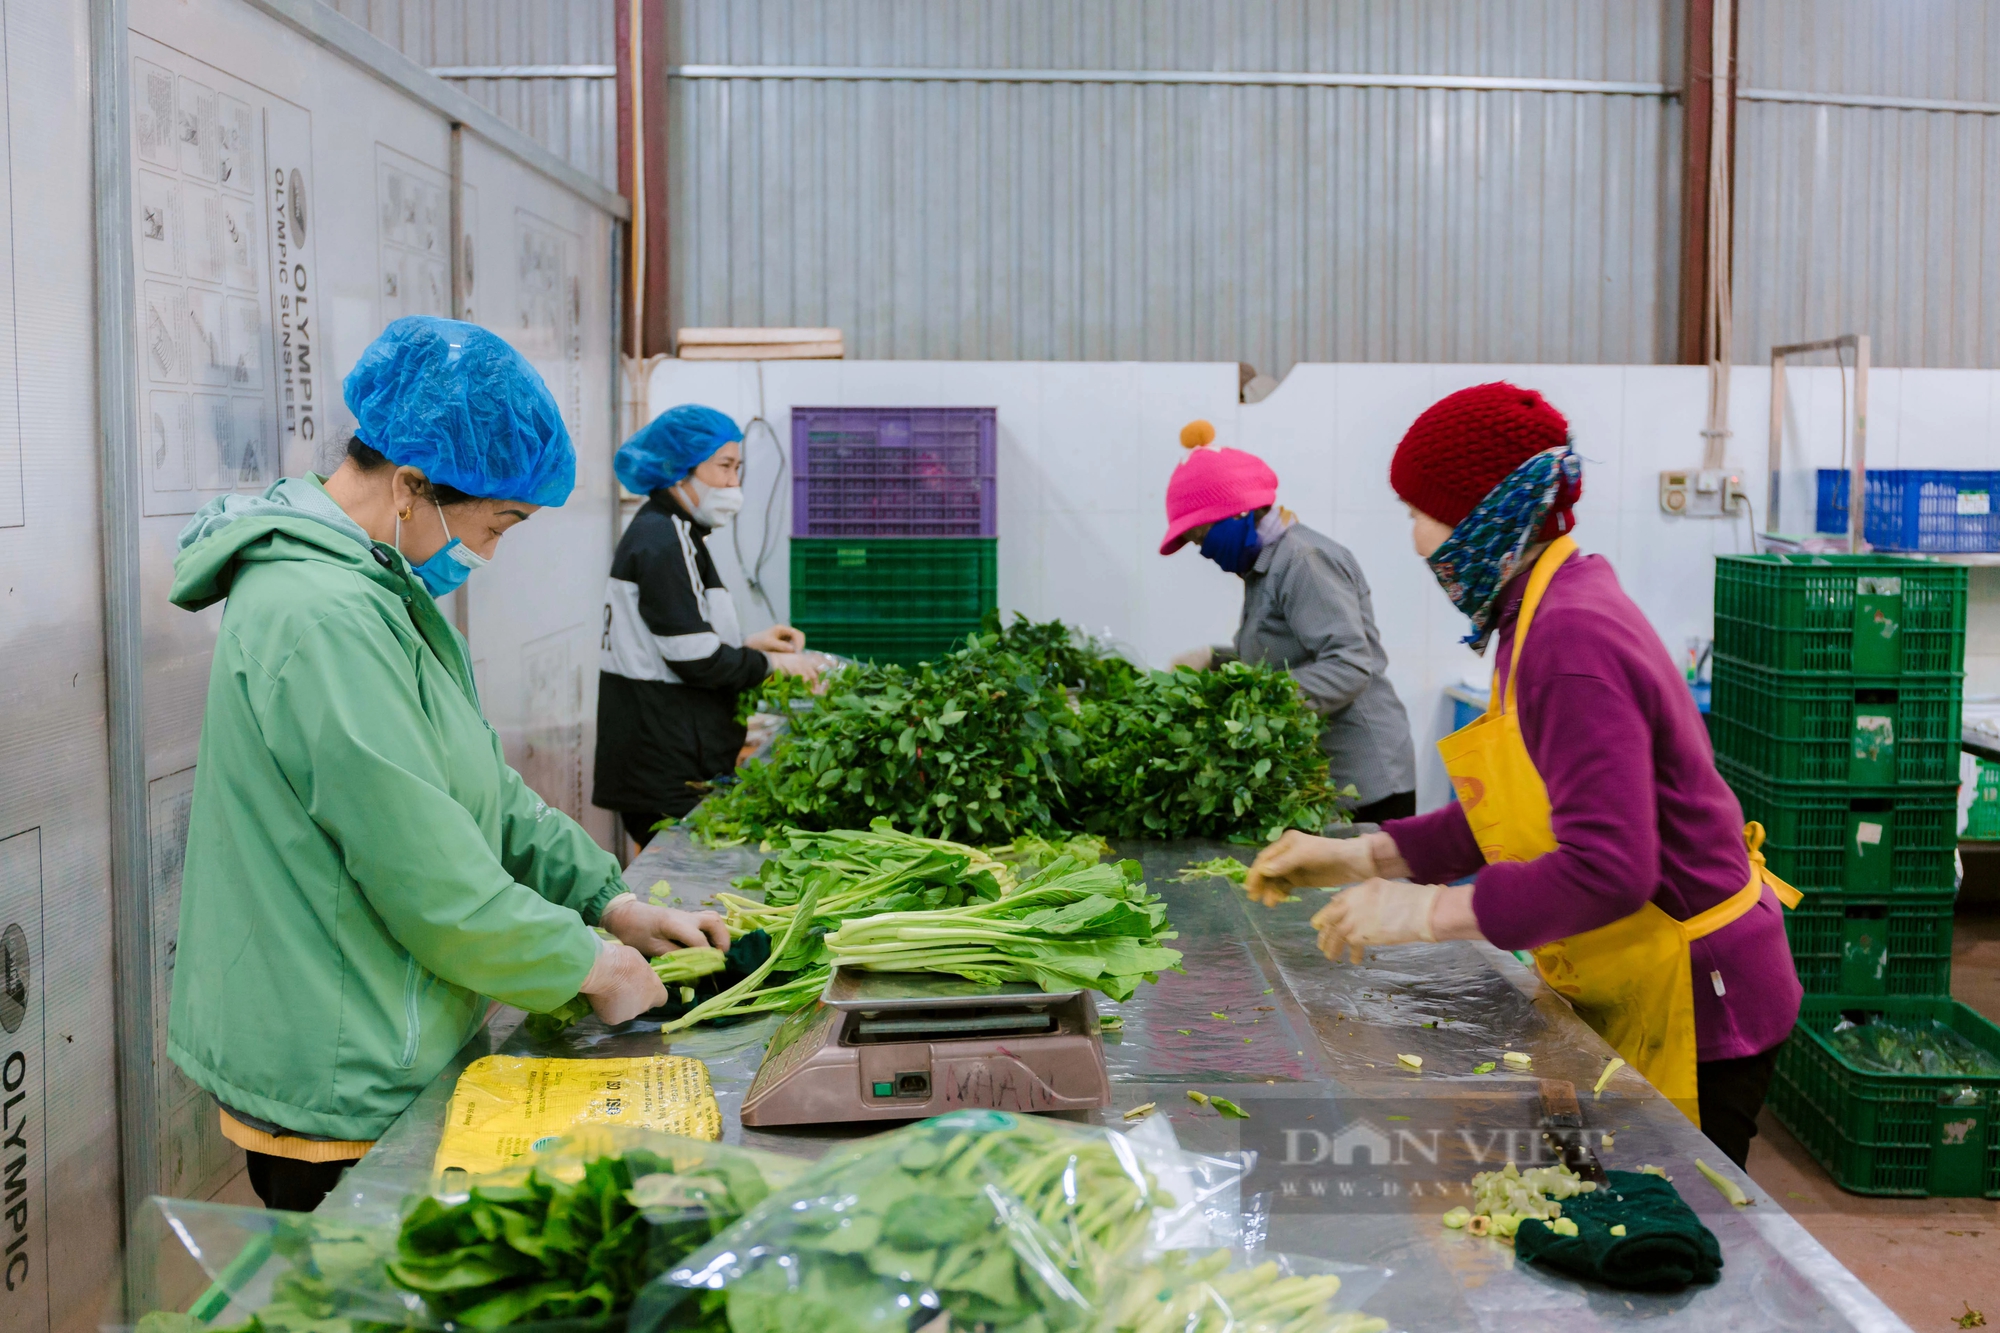 Hưng Yên: Một HTX trồng rau VietGAP lãi 100 triệu đồng/ha, cung ứng 15-20 tấn rau/ngày dịp Tết Giáp Thìn- Ảnh 4.